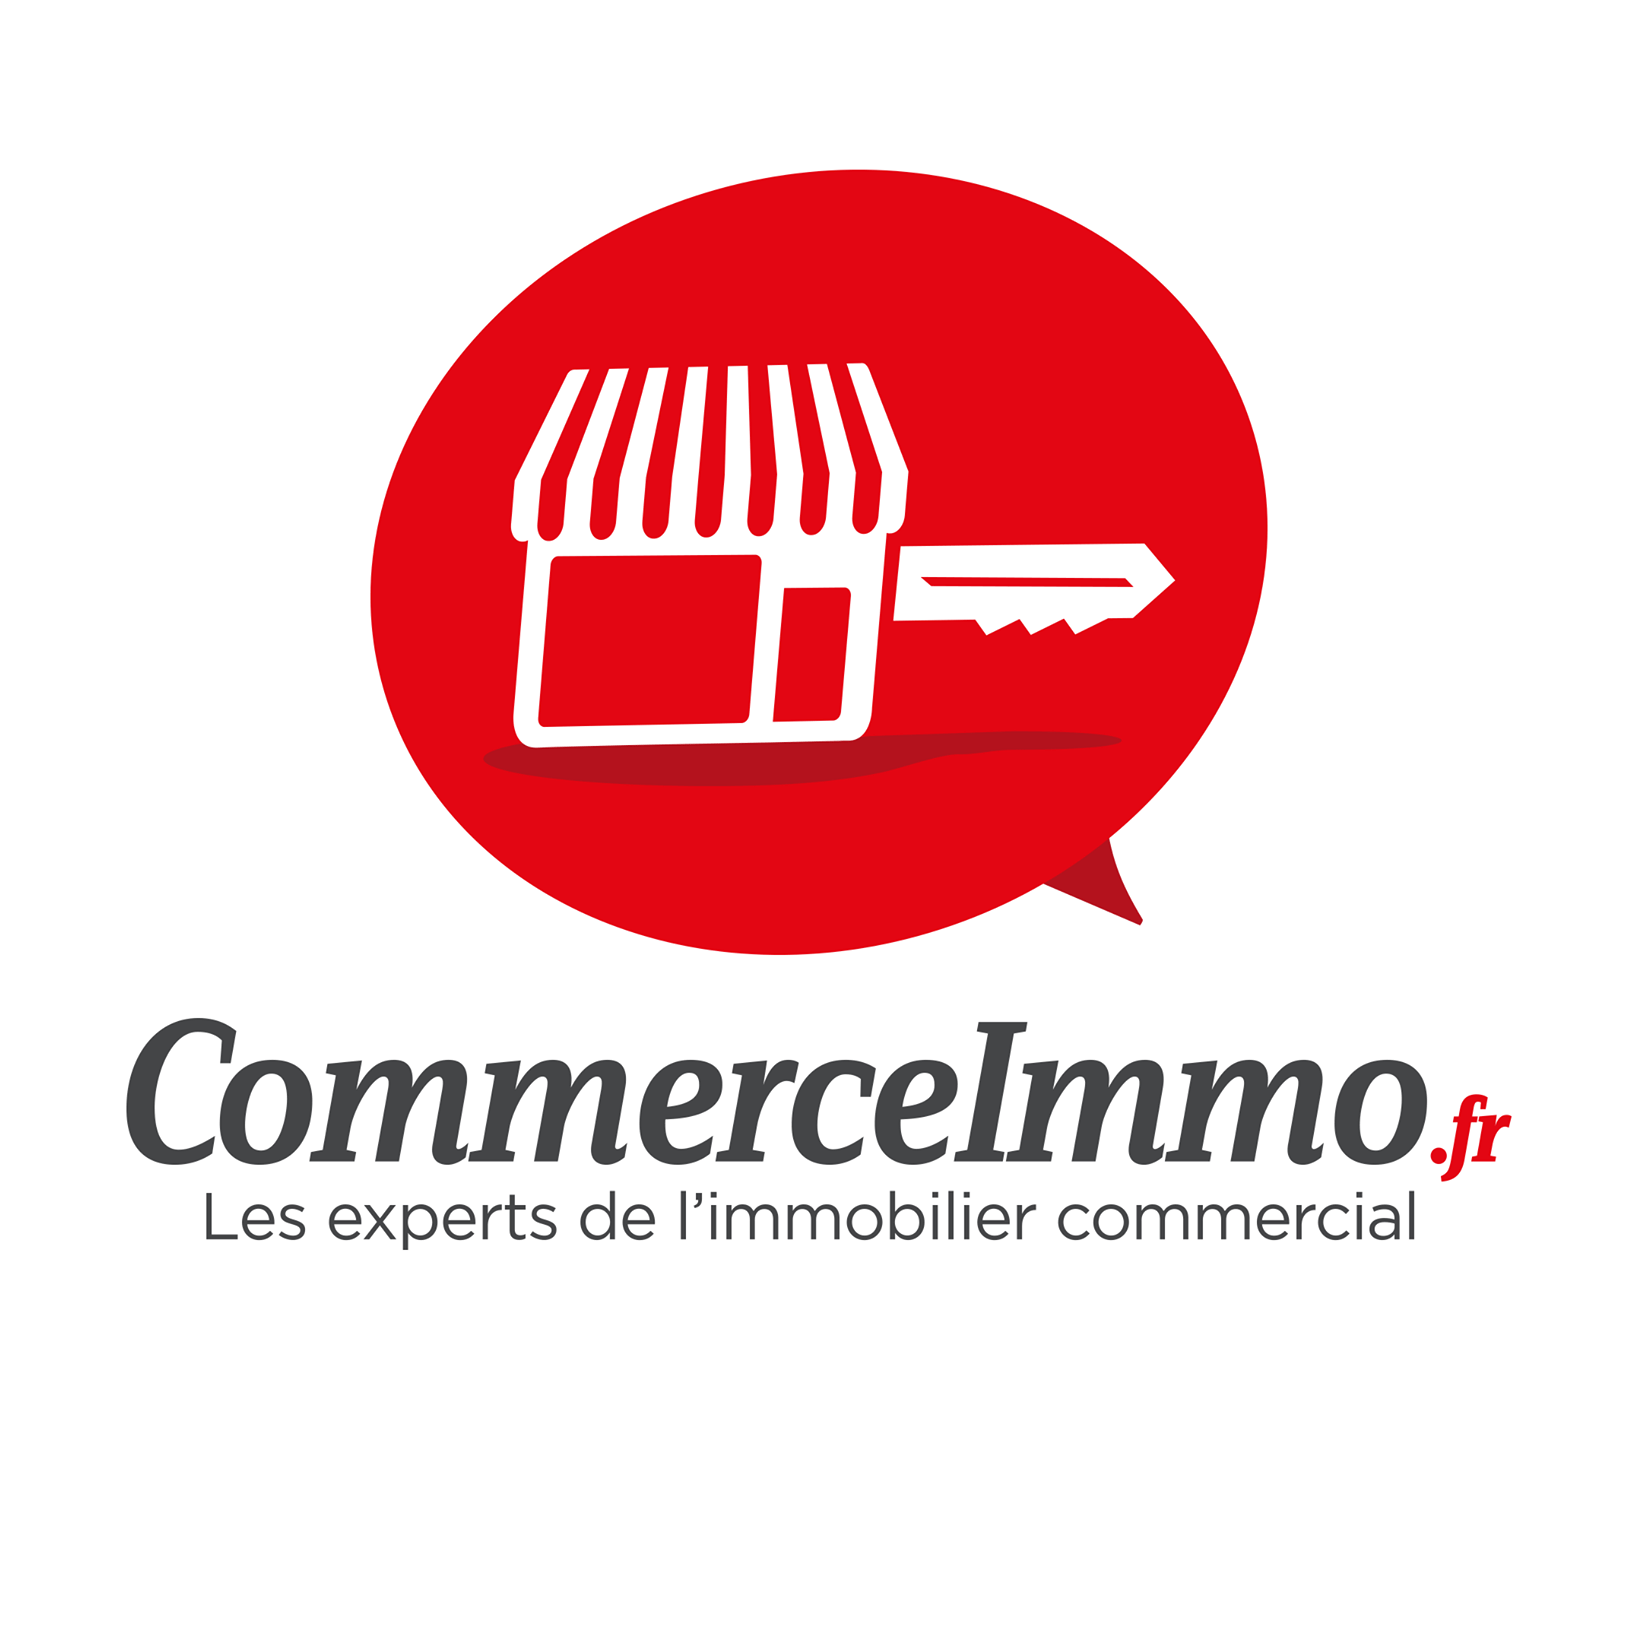 (c) Commerceimmo.fr